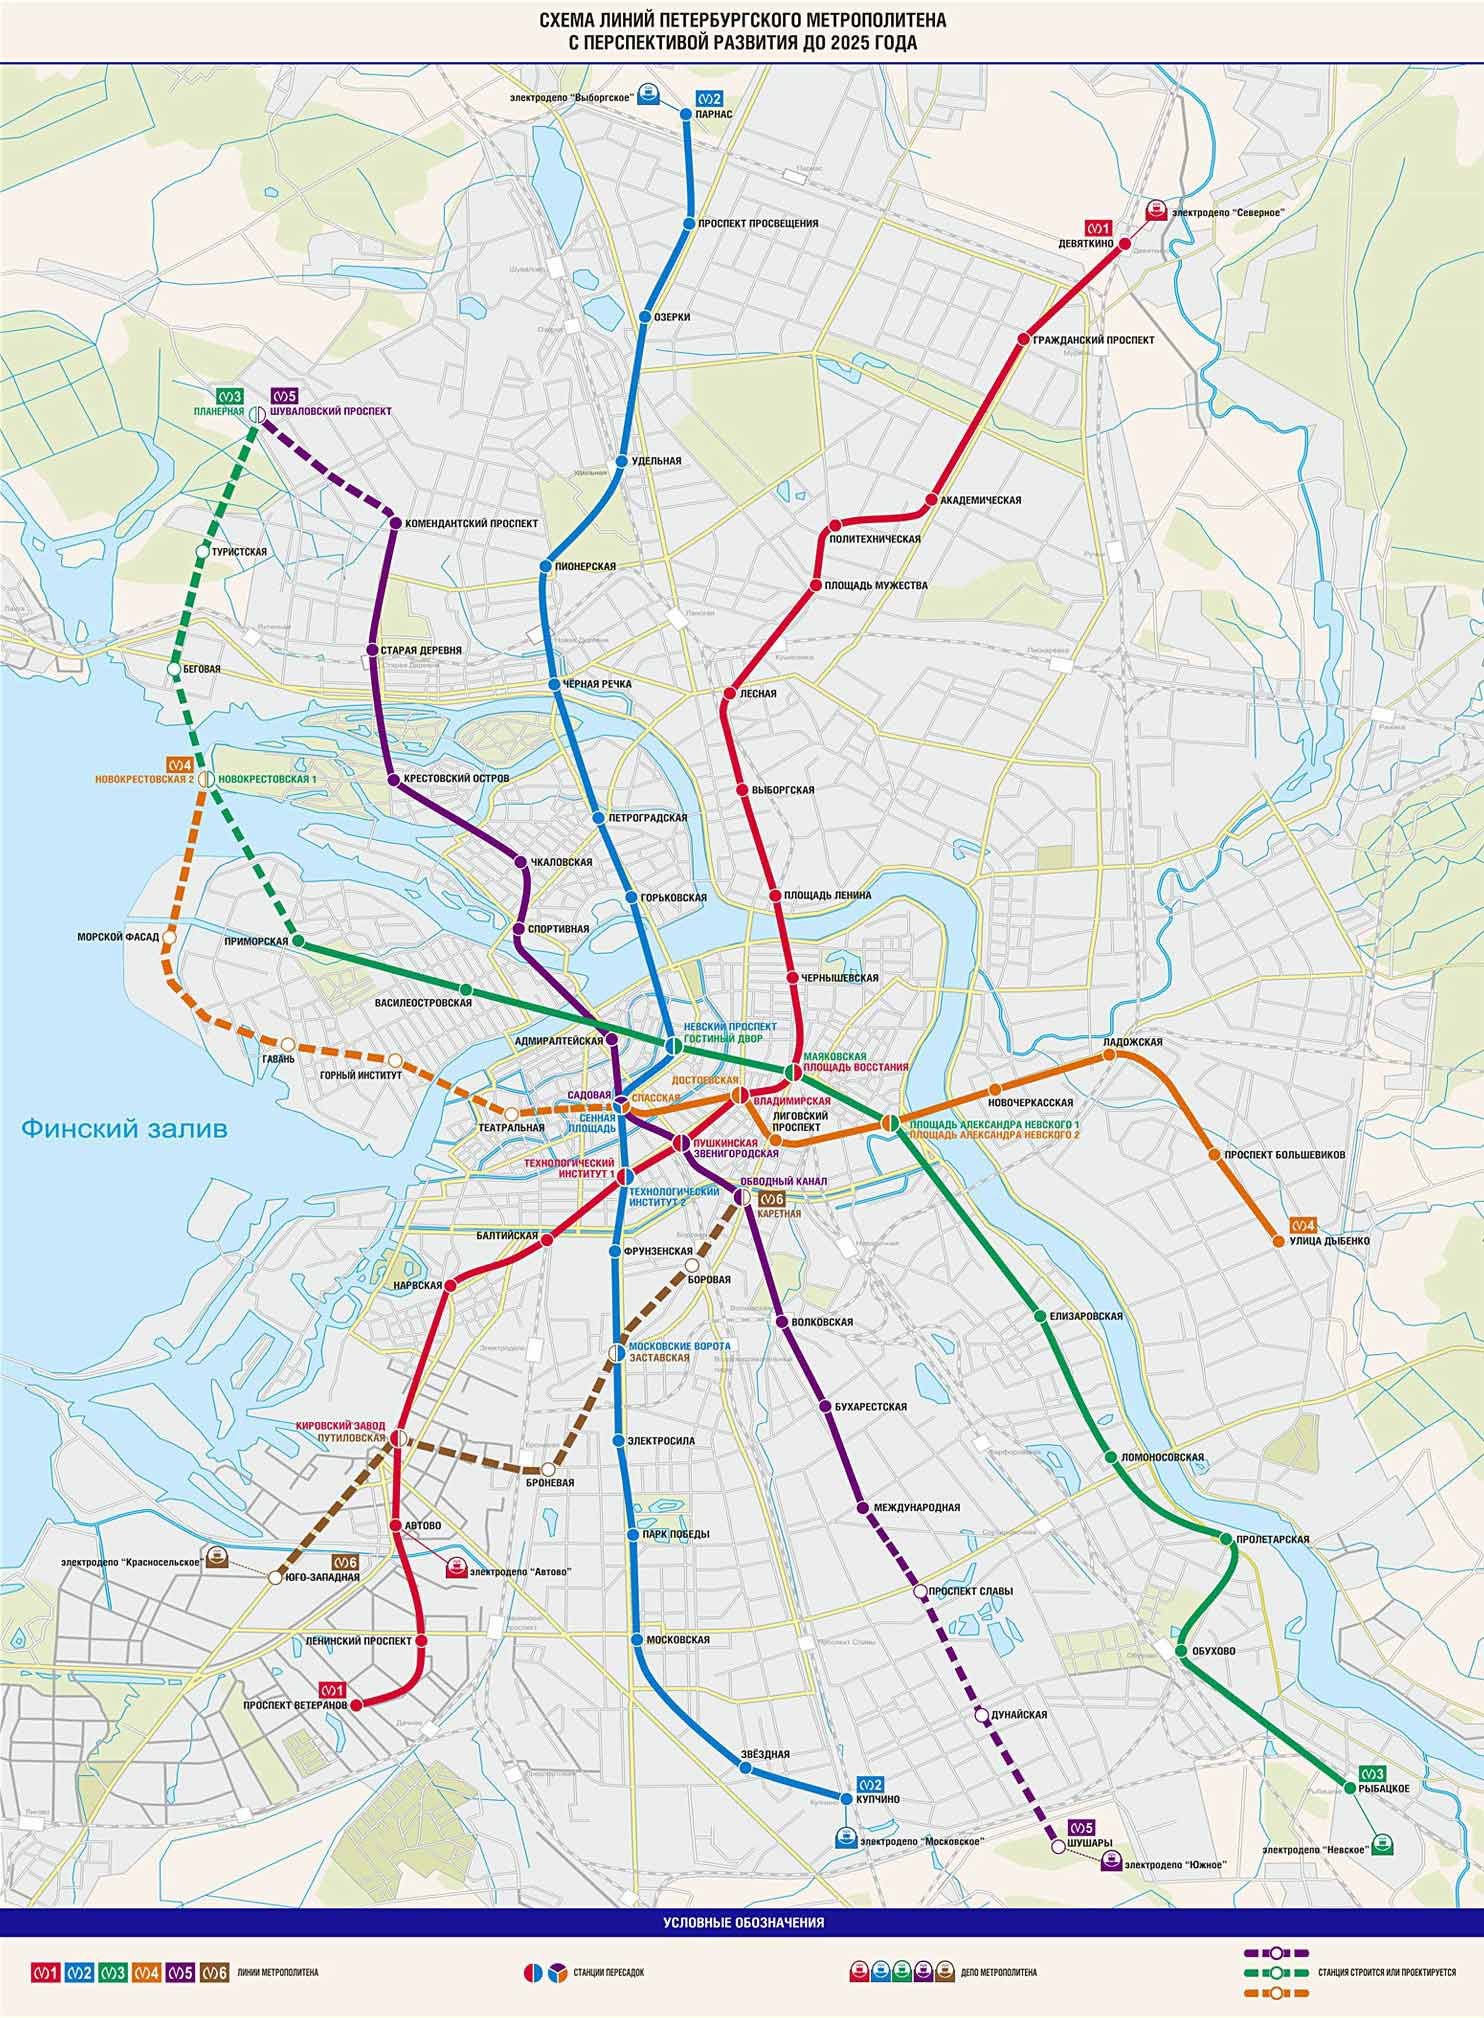 Планы открытия новых станций метро в Санкт-Петербурге